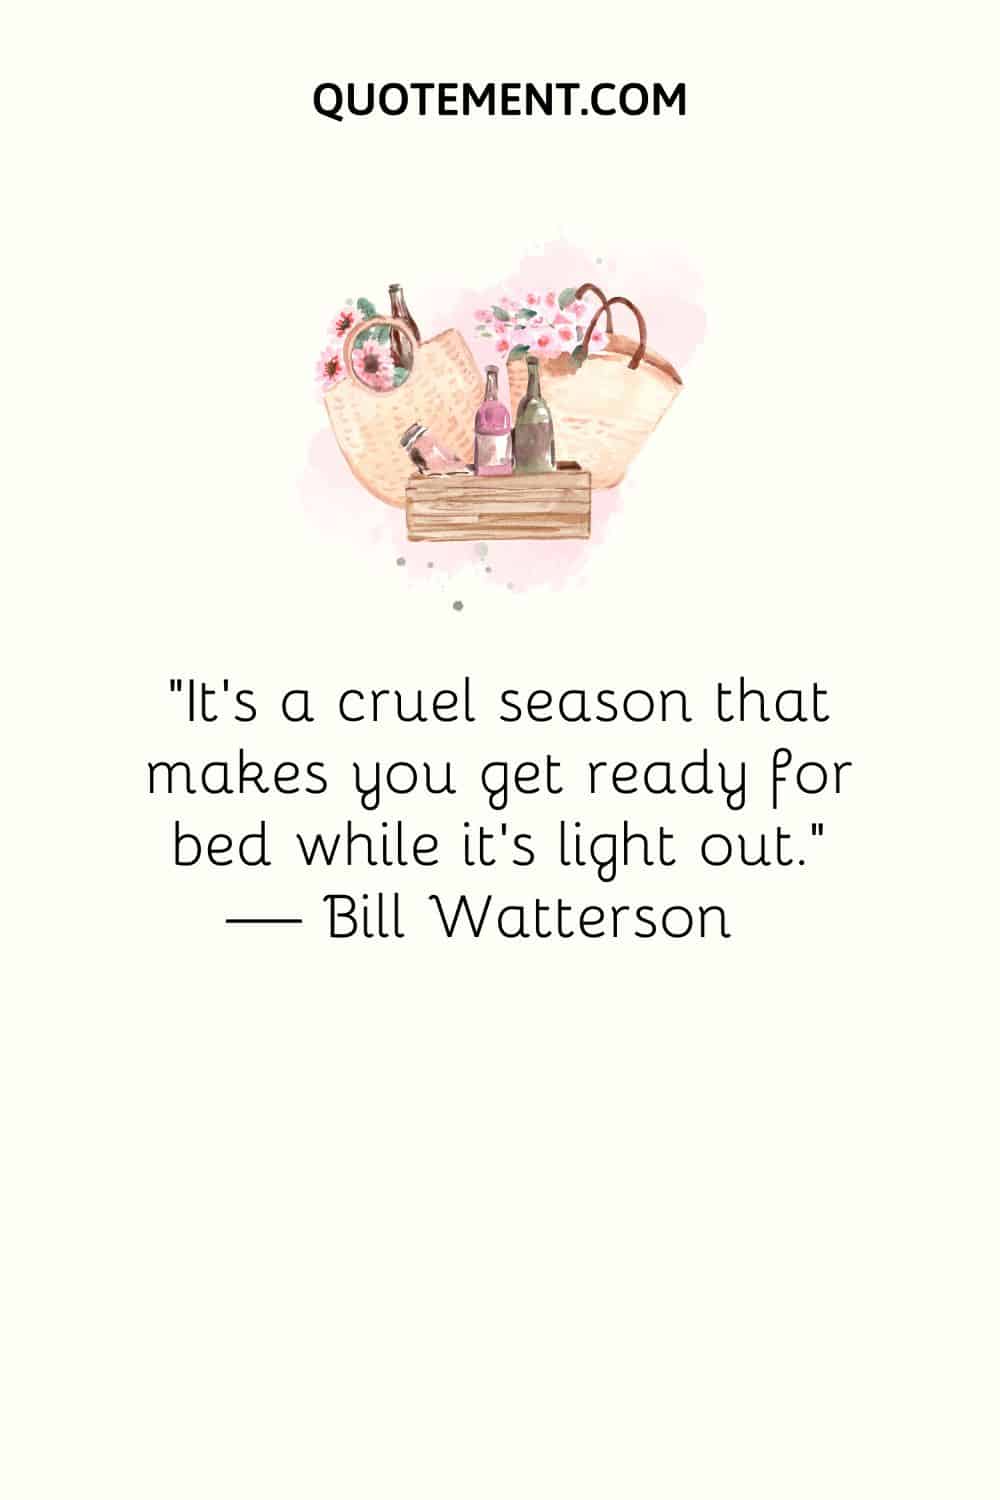 "Es una estación cruel que te hace prepararte para ir a la cama mientras hay luz". - Bill Watterson